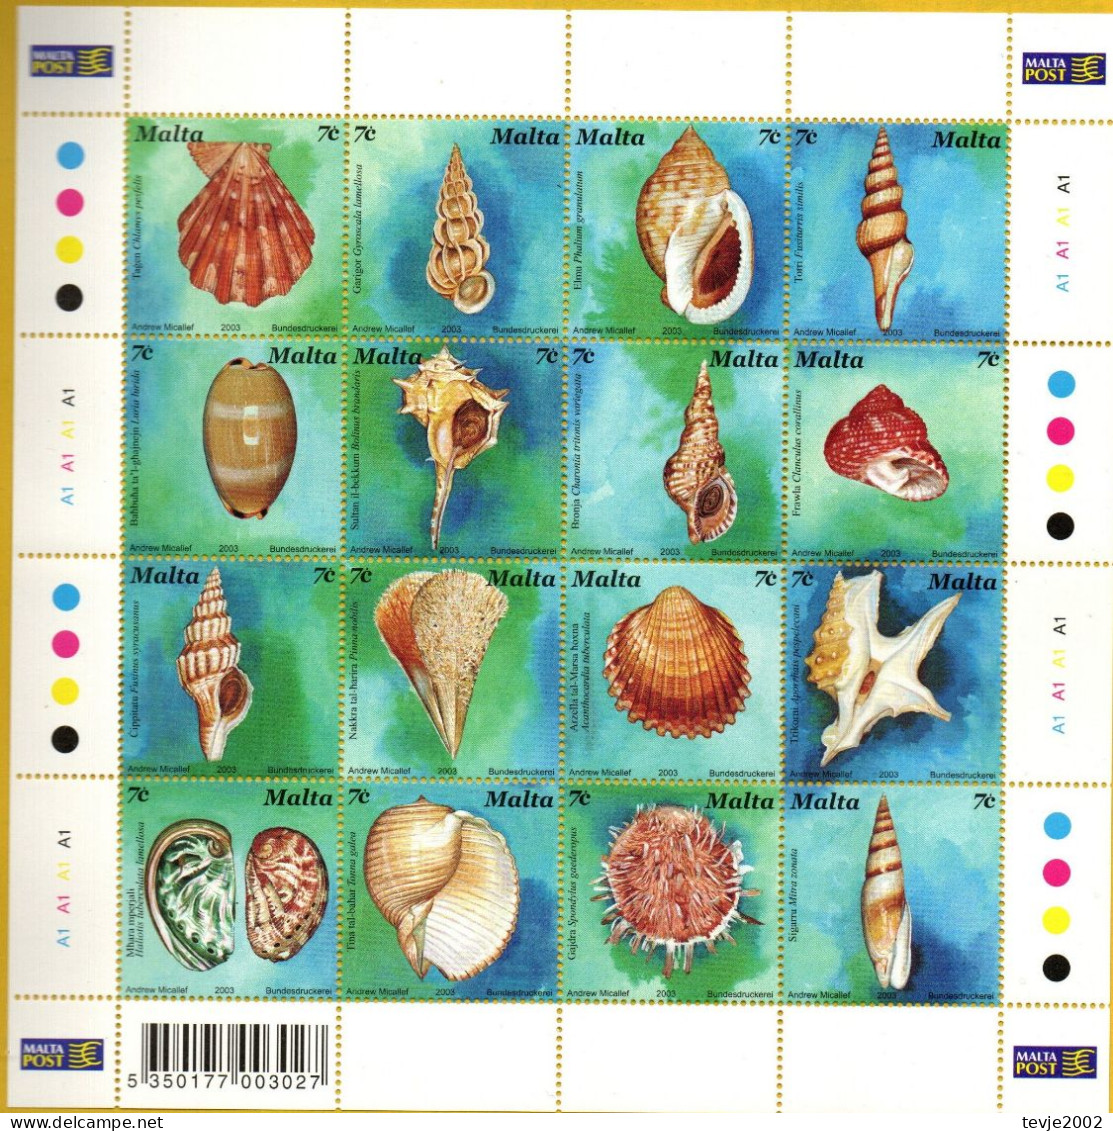 Malta 2003 - Mi.Nr. 1286 - 1301 Kleinbogen - Postfrisch MNH - Tiere Animals Muscheln Shellfish - Conchas